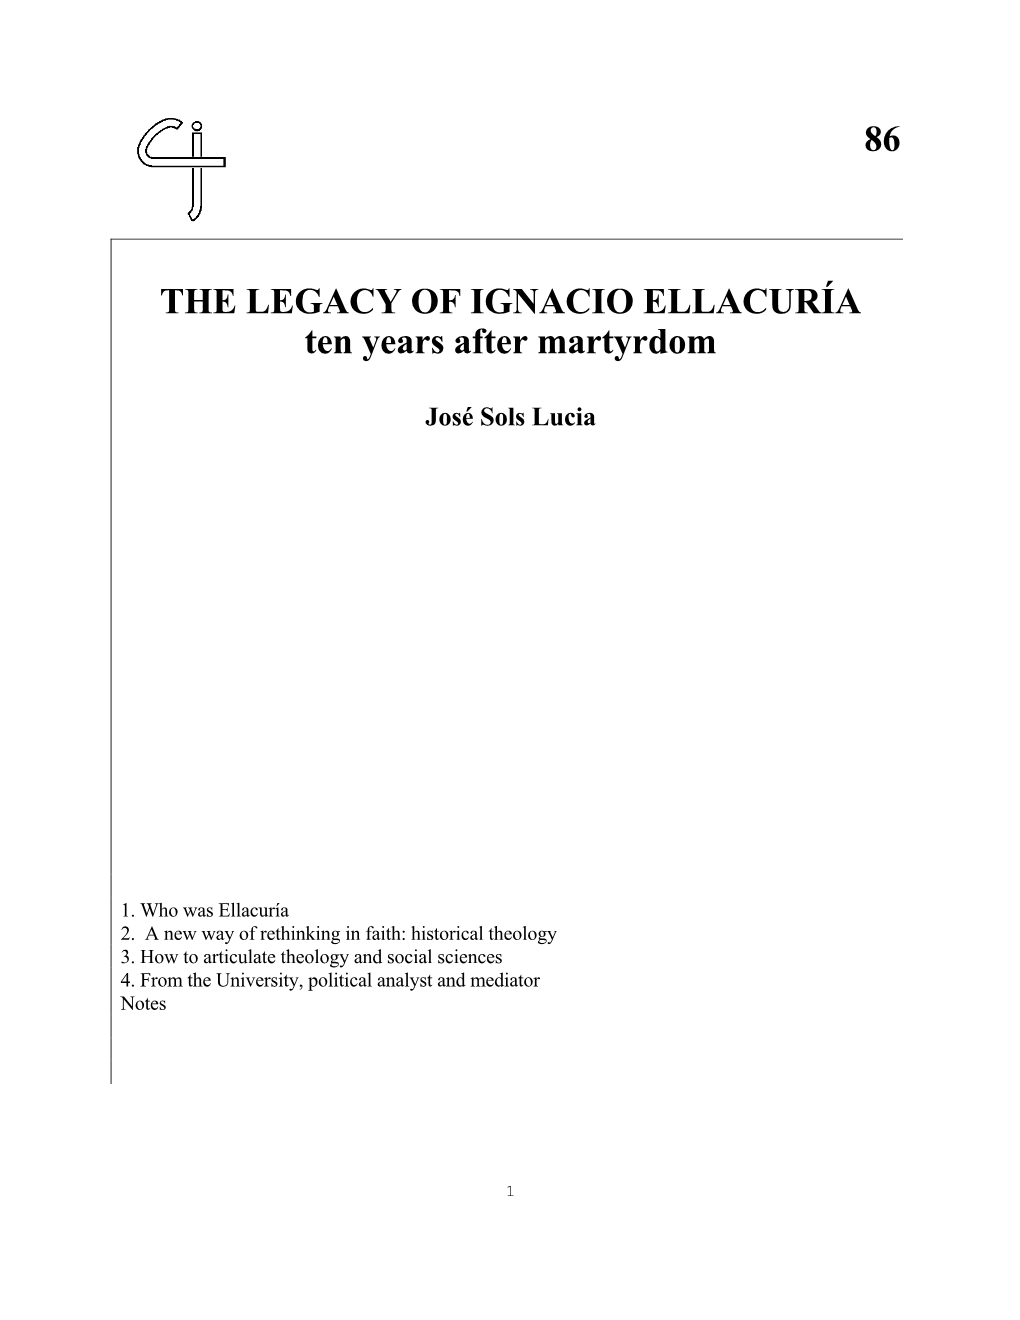 The Legacy of Ignacio Ellacuría. Ten Years After Martyrdom